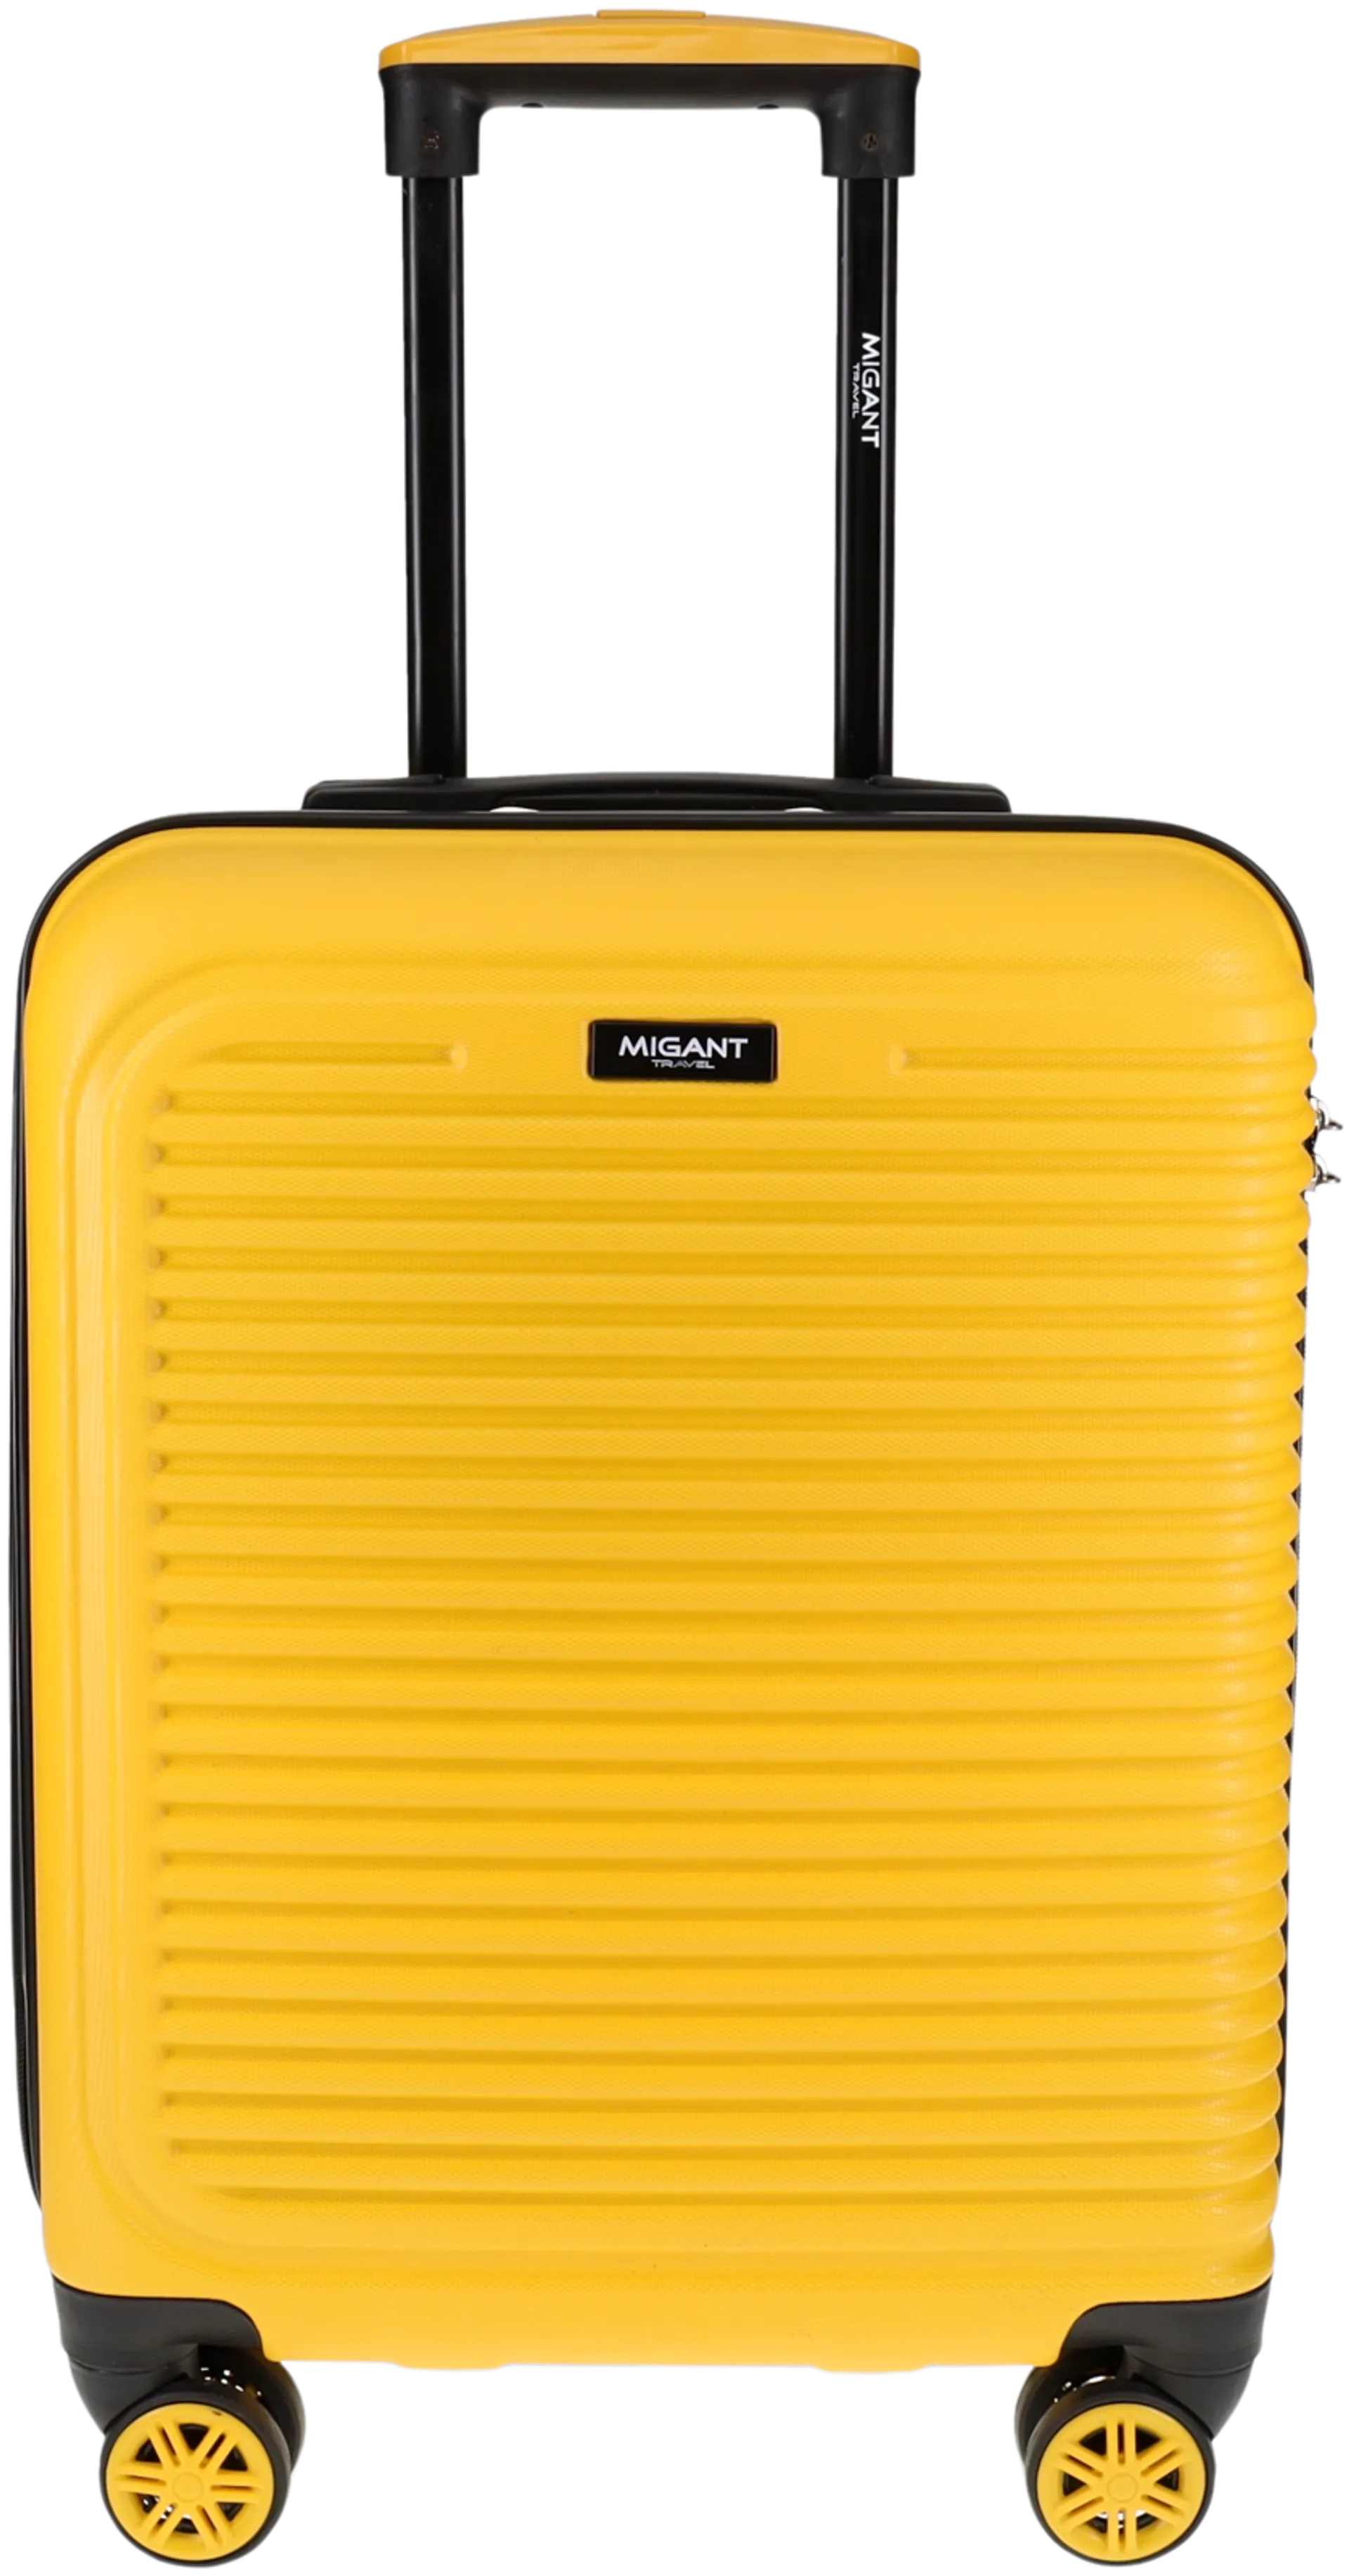 Migant matkalaukku MGT-27 52 cm keltainen - 1